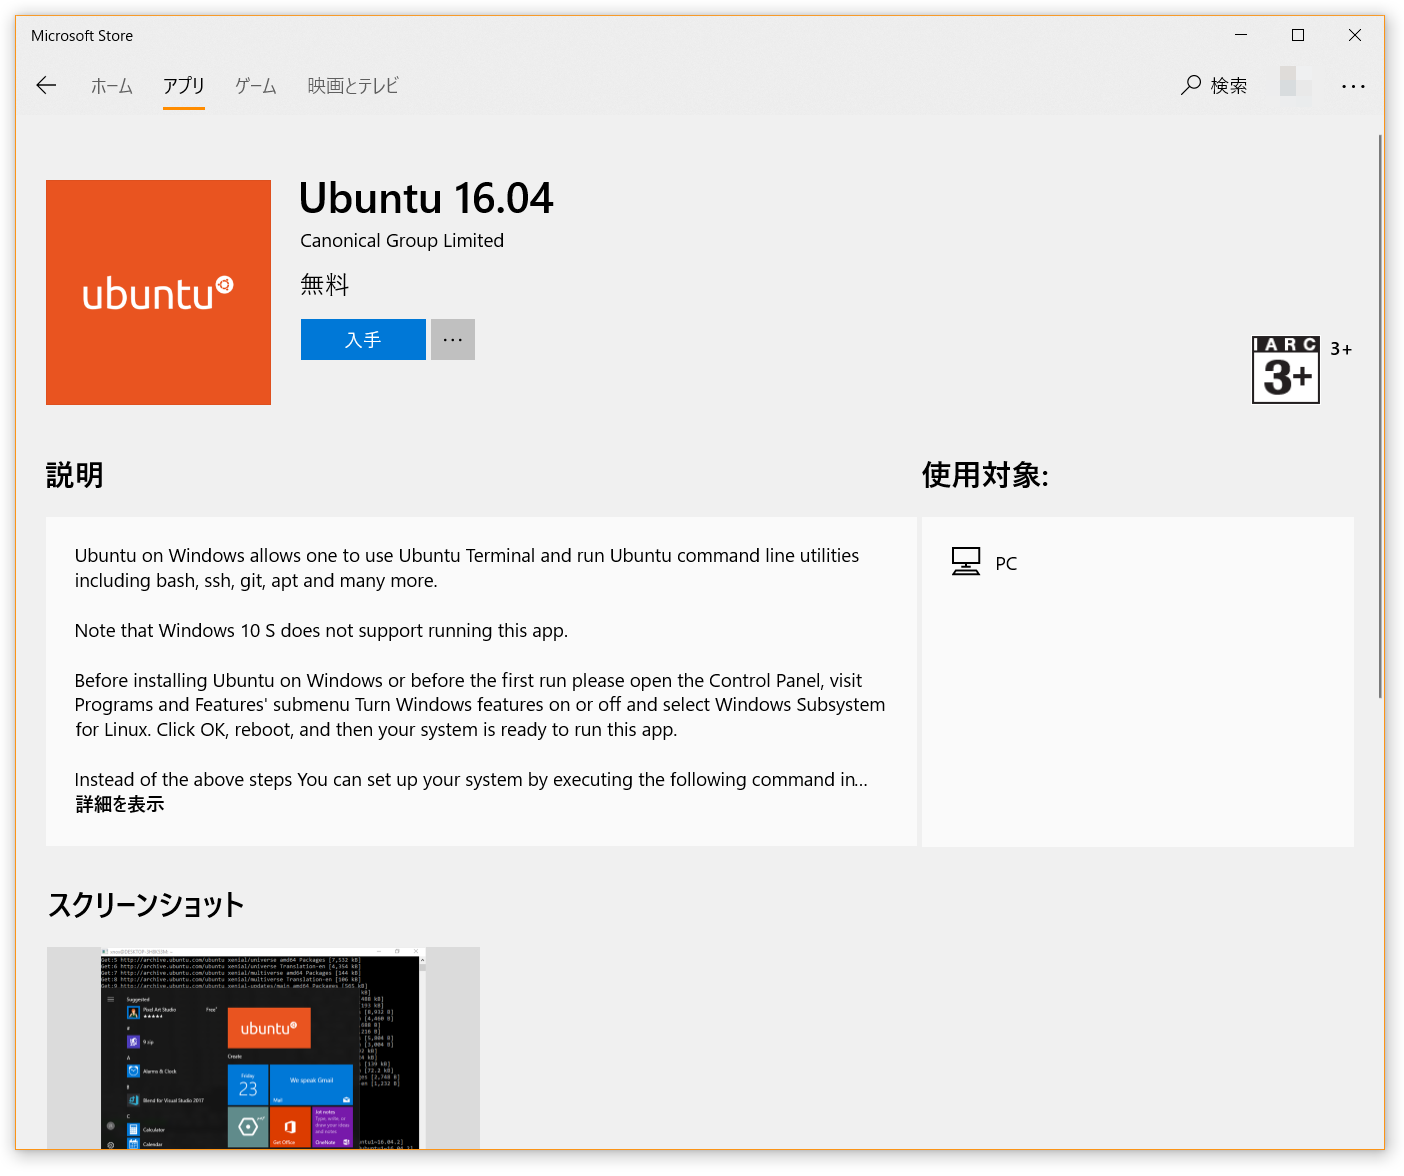 画面：Microsoft Storeで「ubuntu」で検索して